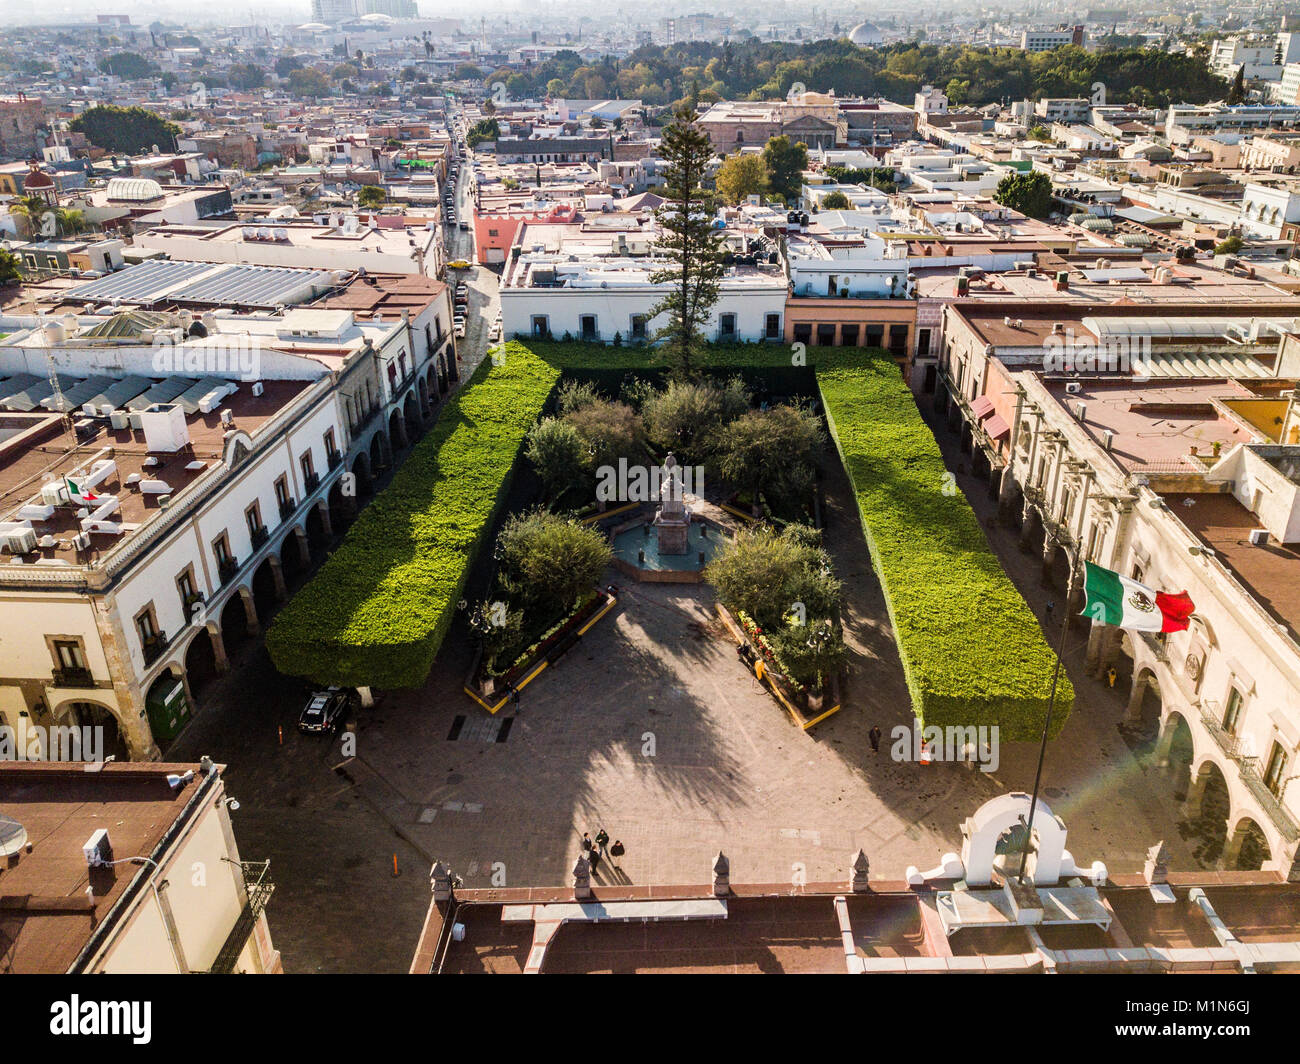 Plaza de Armas, Santiago de Querétaro, Qro., Mexico Stock Photo